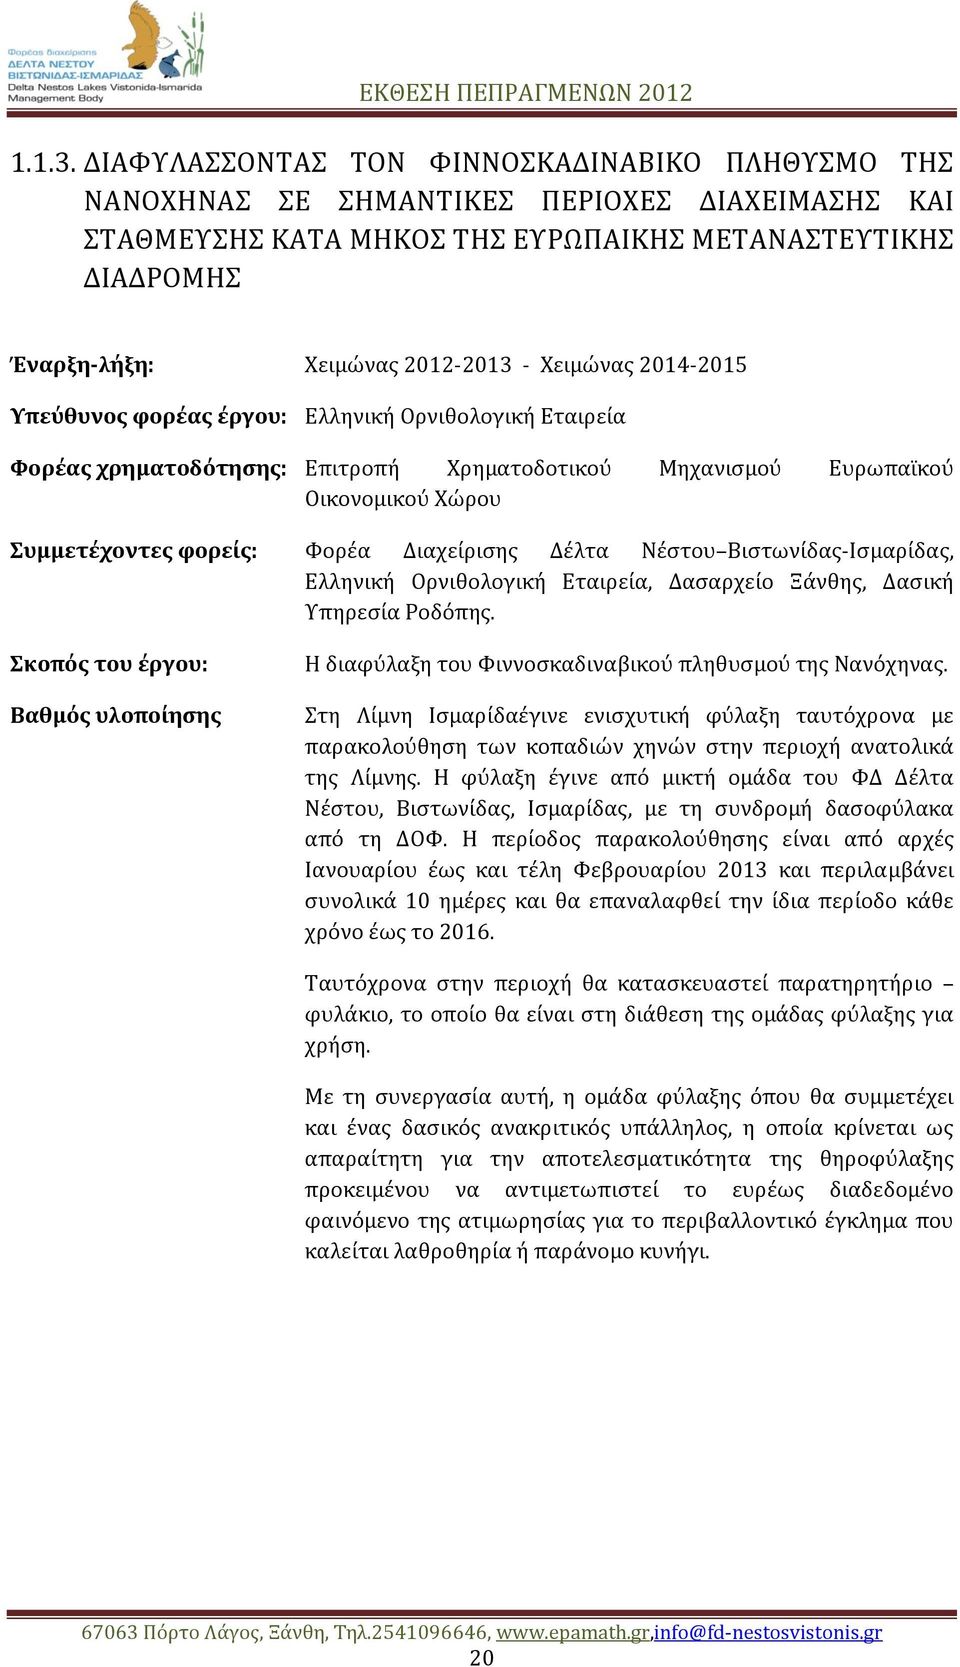 Χειμώνας 2014-2015 Υπεύθυνος φορέας έργου: Ελληνική Ορνιθολογική Εταιρεία Φορέας χρηματοδότησης: Επιτροπή Χρηματοδοτικού Μηχανισμού Ευρωπαϊκού Οικονομικού Χώρου Συμμετέχοντες φορείς: Φορέα